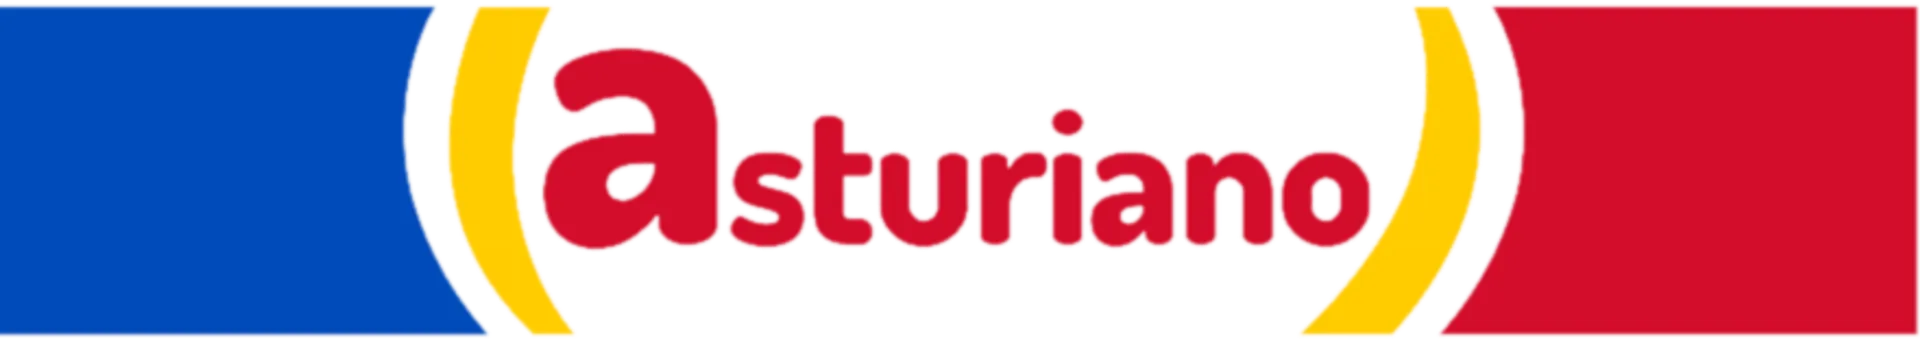 EL ASTURIANO logo